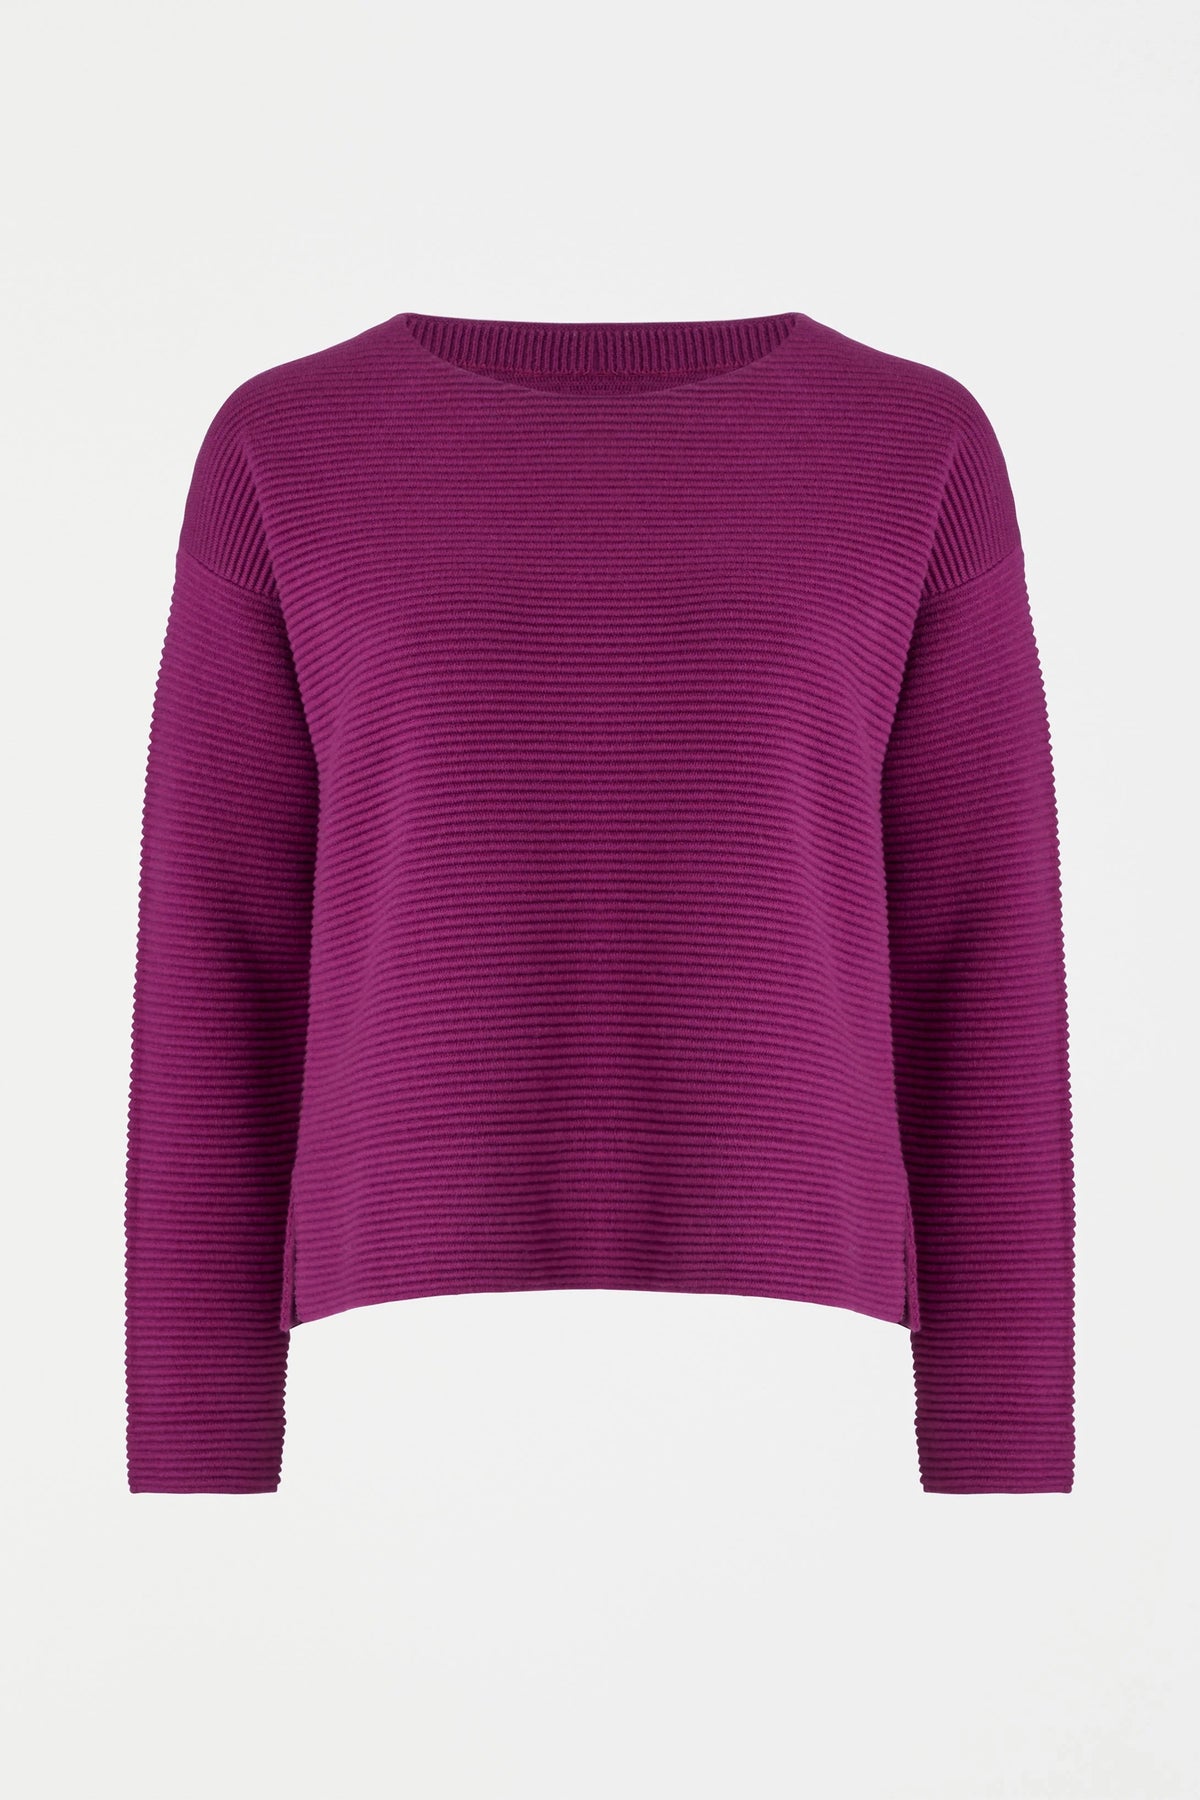 ELK | Neiu Ottoman Sweater - Magenta